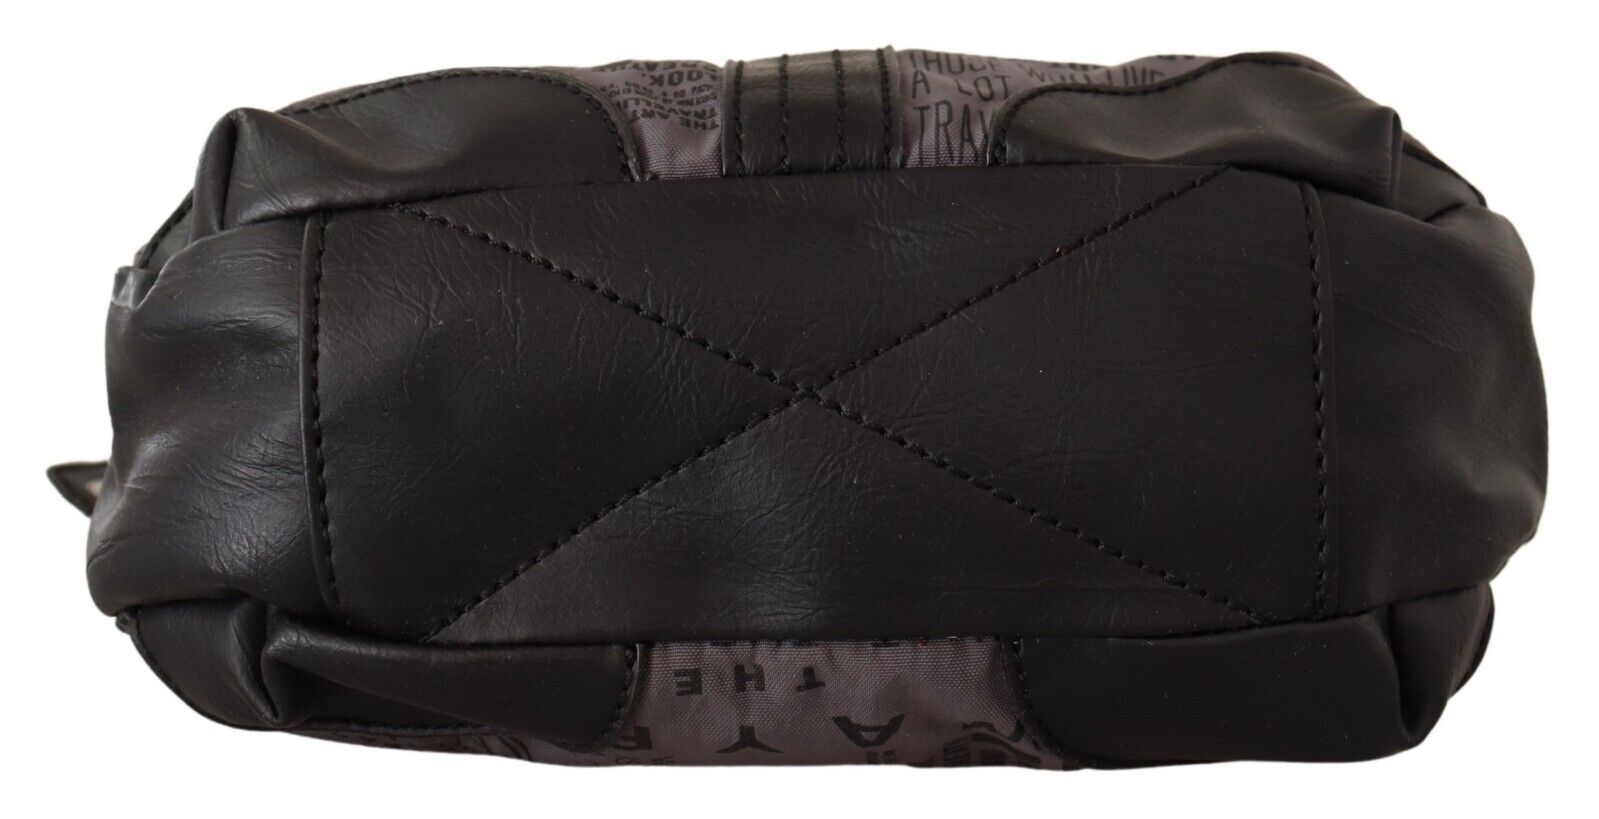 WAYFARER Gray Printed Handbag Shoulder Purse Fabric Bag - Fizigo